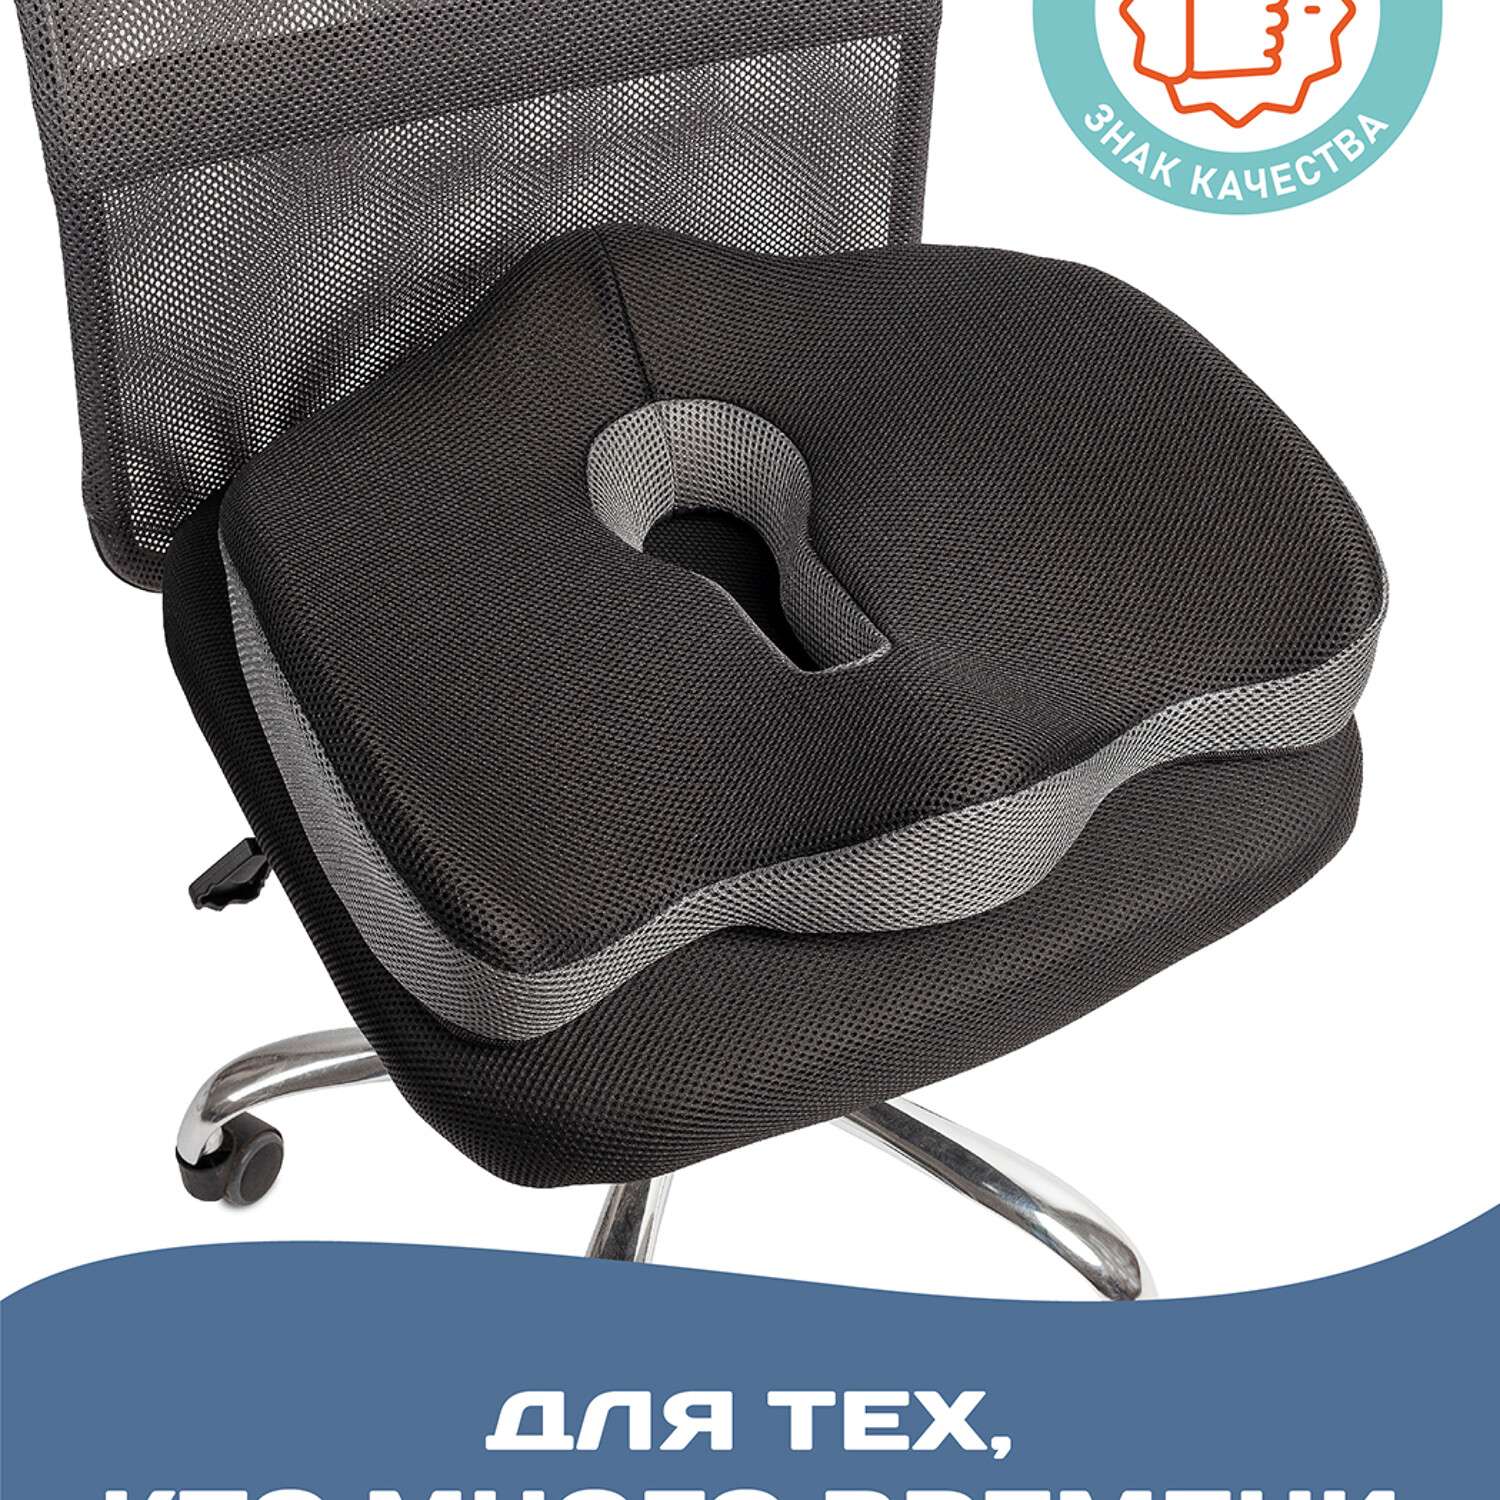 Ортопедическая подушка Ambesonne для сидения под копчик на офисный стул и сидение автомобиля 45х40 см - фото 4